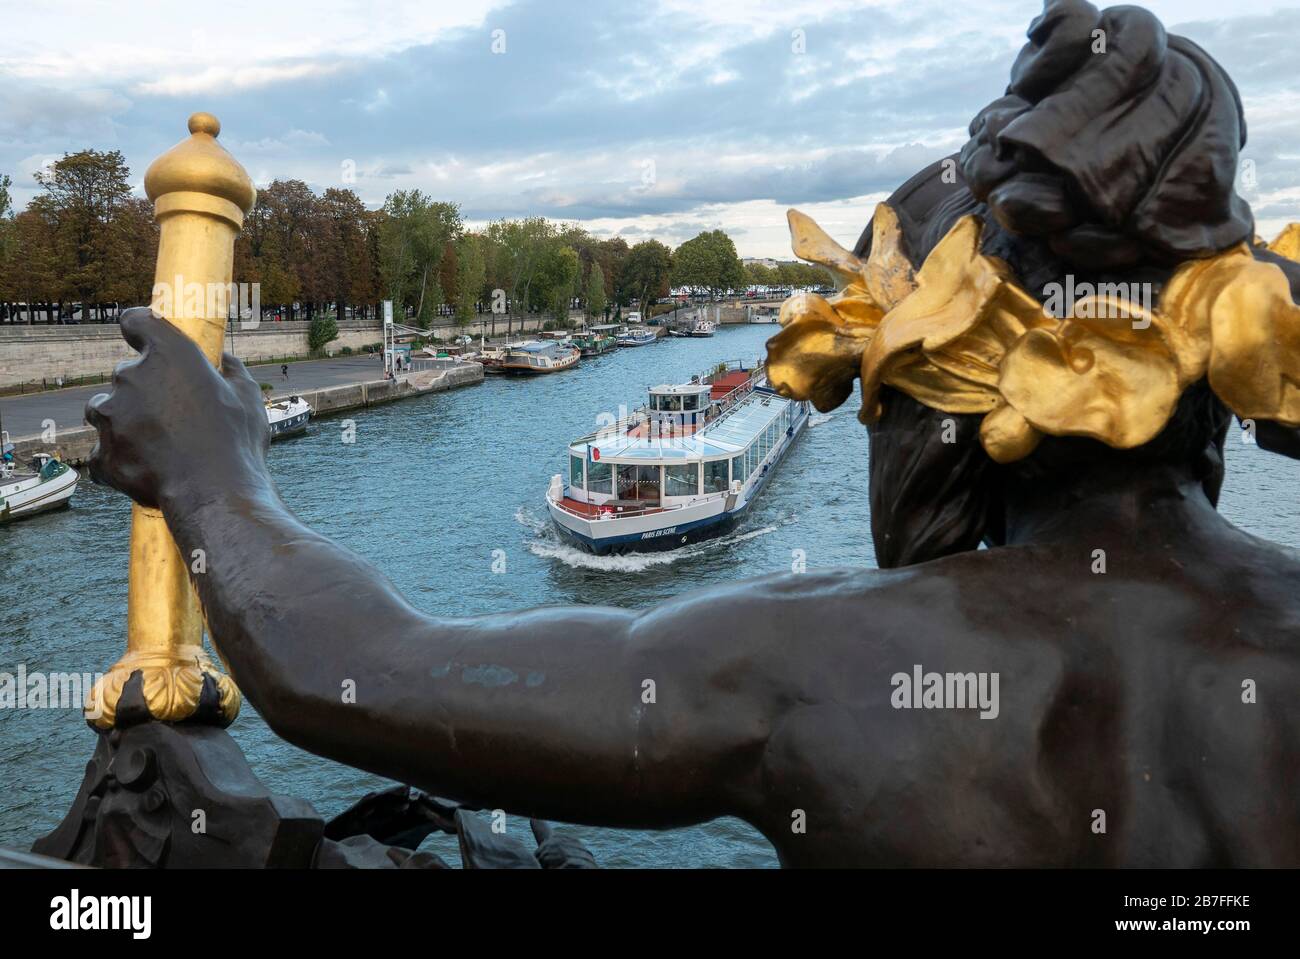 Tour bateau sur la Seine approchant le Pont Alexandre III avec la statue des nymphes de la Seine en premier plan, Paris, France, Europe Banque D'Images